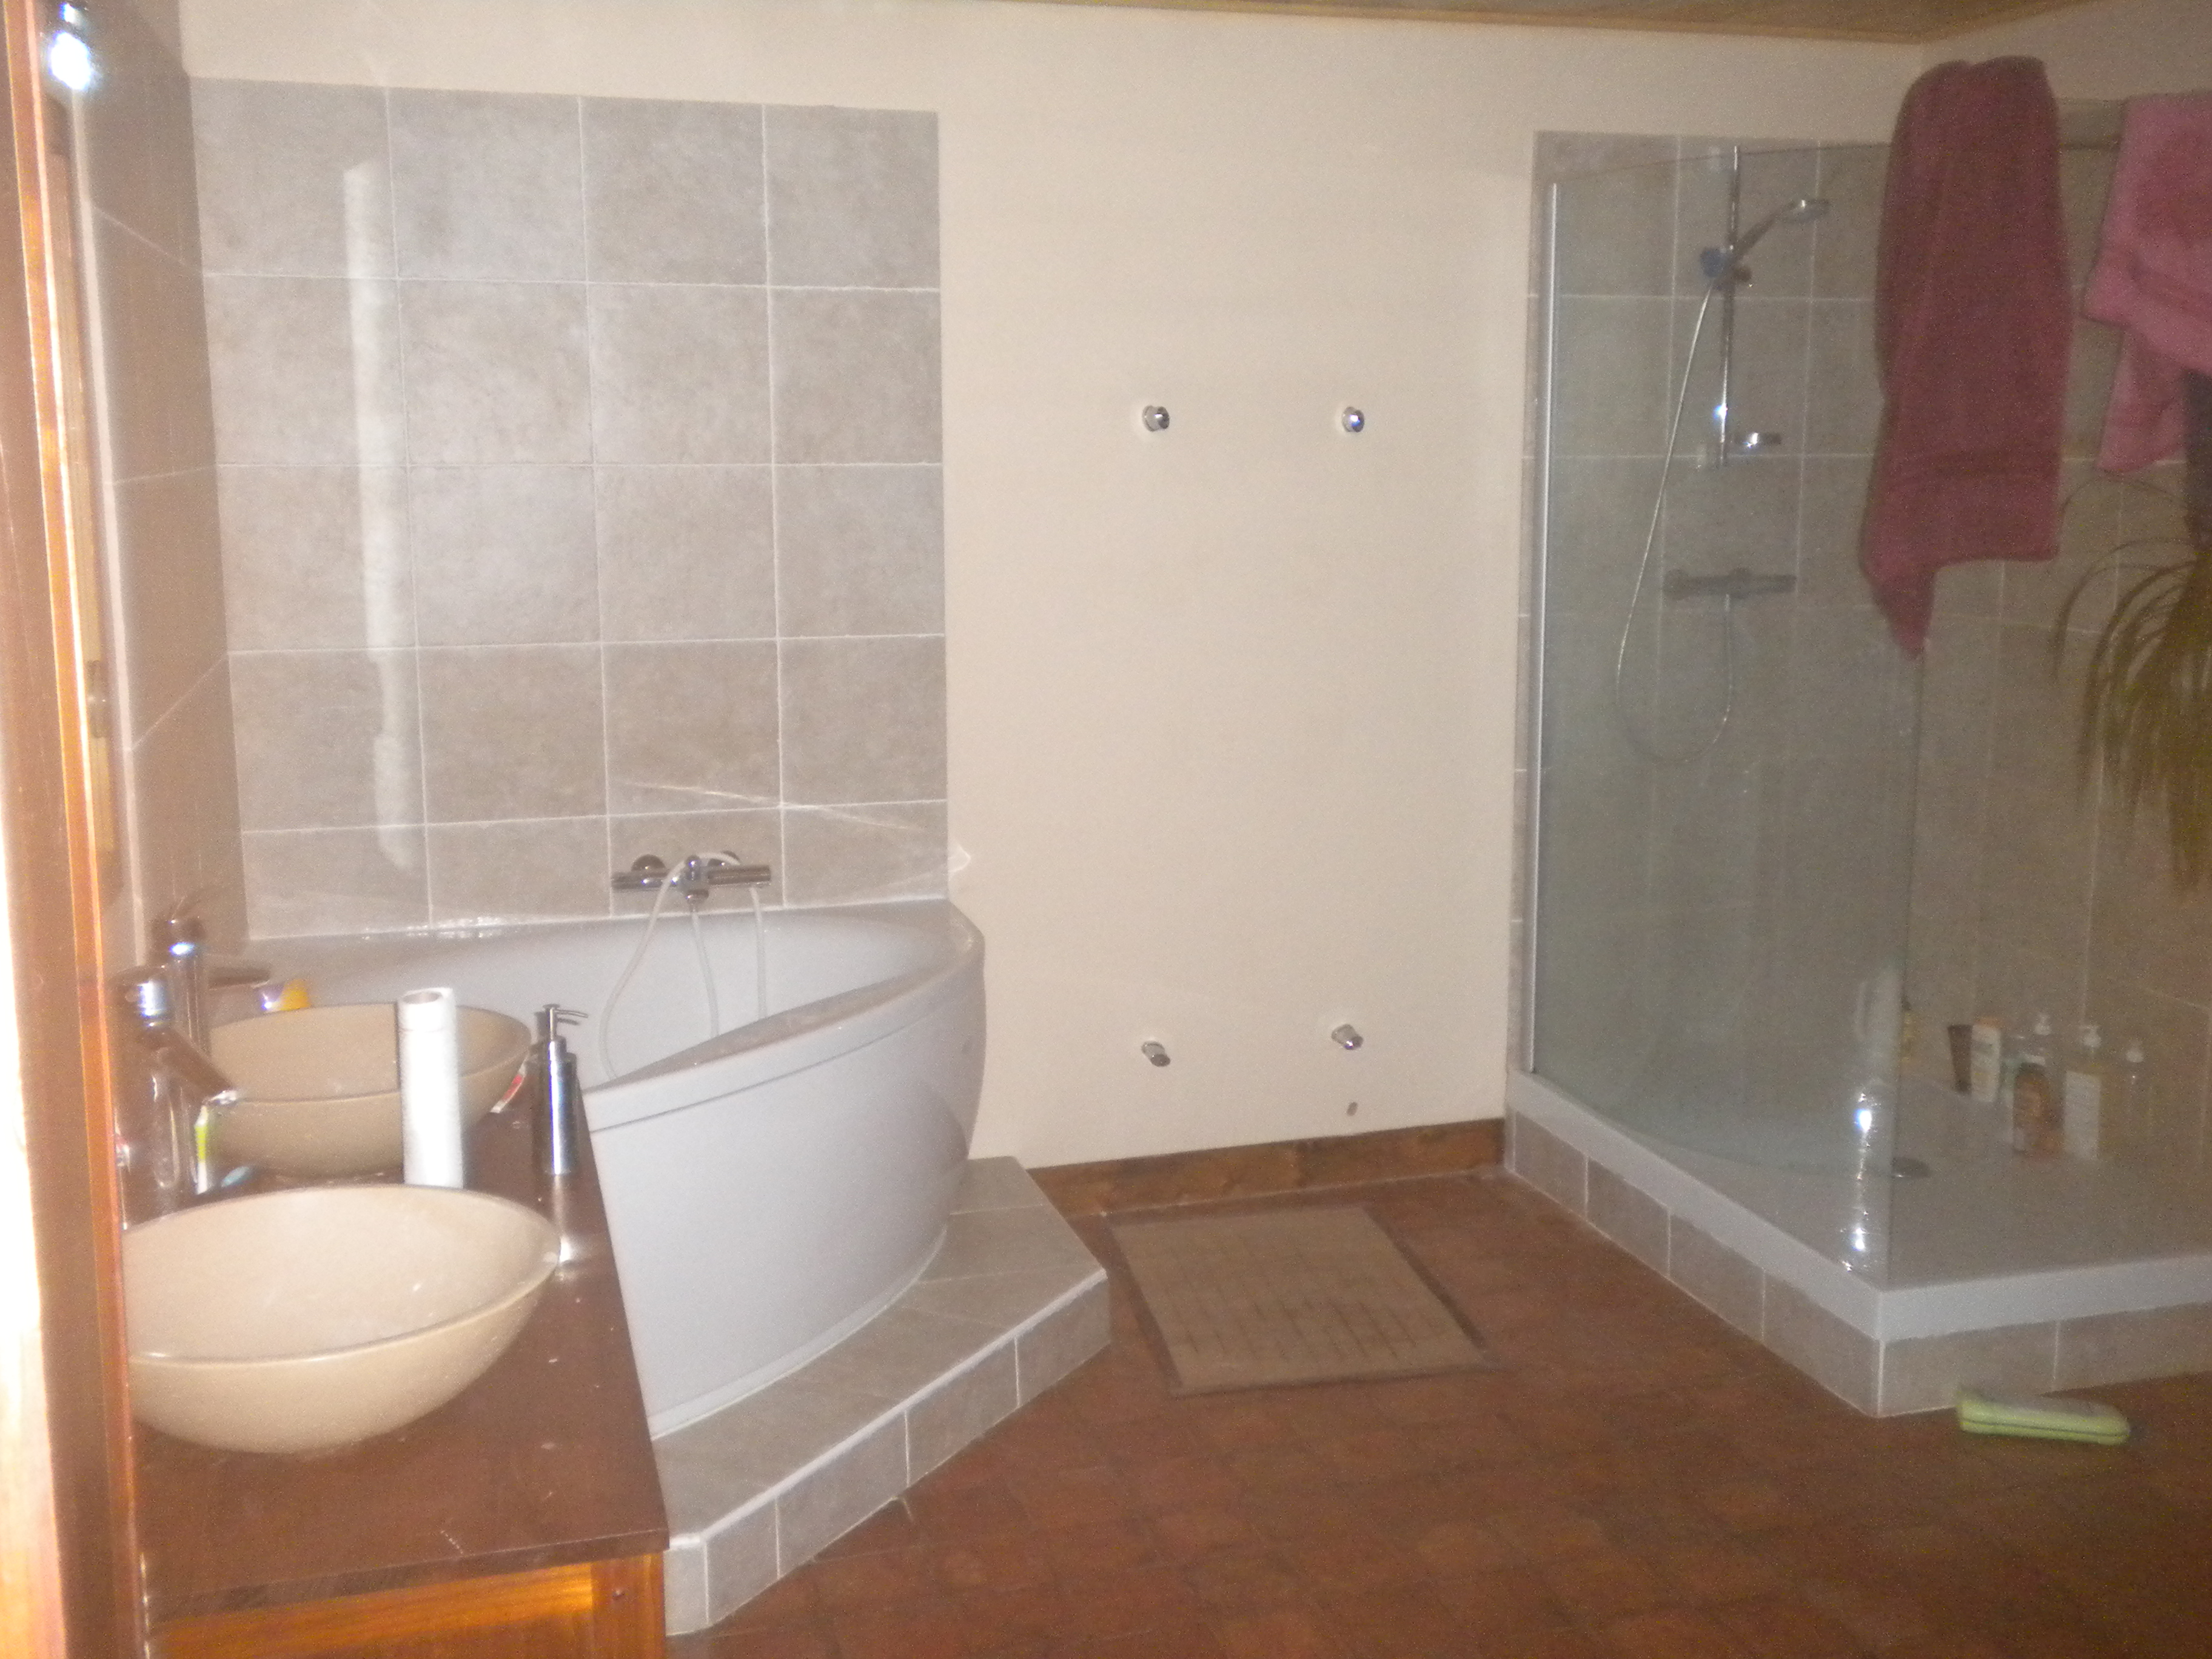 Salle de bains rénovation clé en main de Bonnétable baignoire d'angle et douche (9)